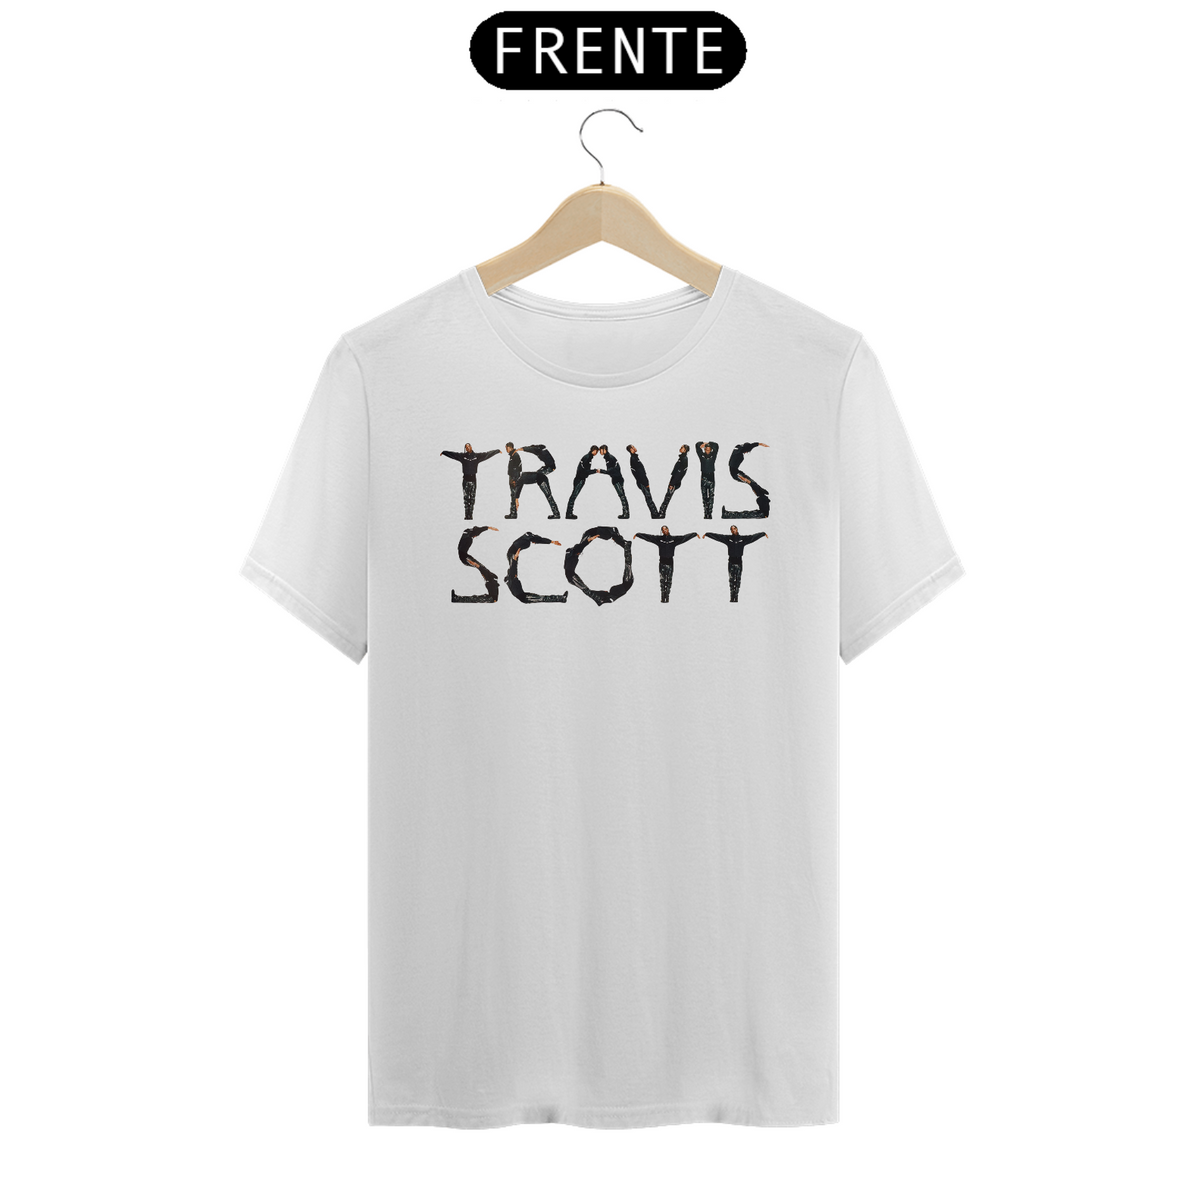 Nome do produto: Travis Scott